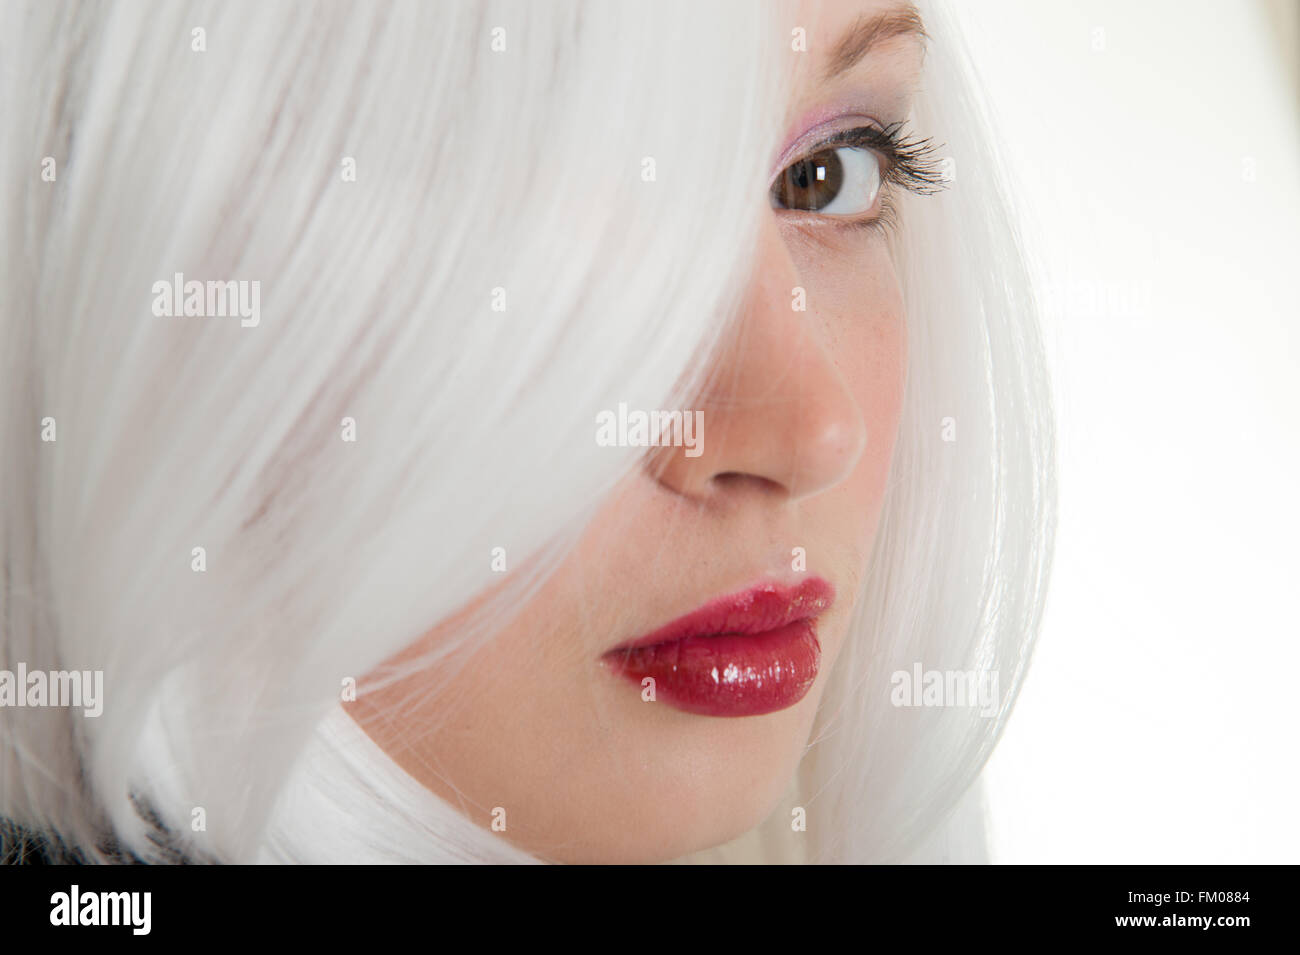 Schwarz / weiß Bild Nahaufnahme Portrait eines Mädchens hinter ihr weißes Haar Stockfoto